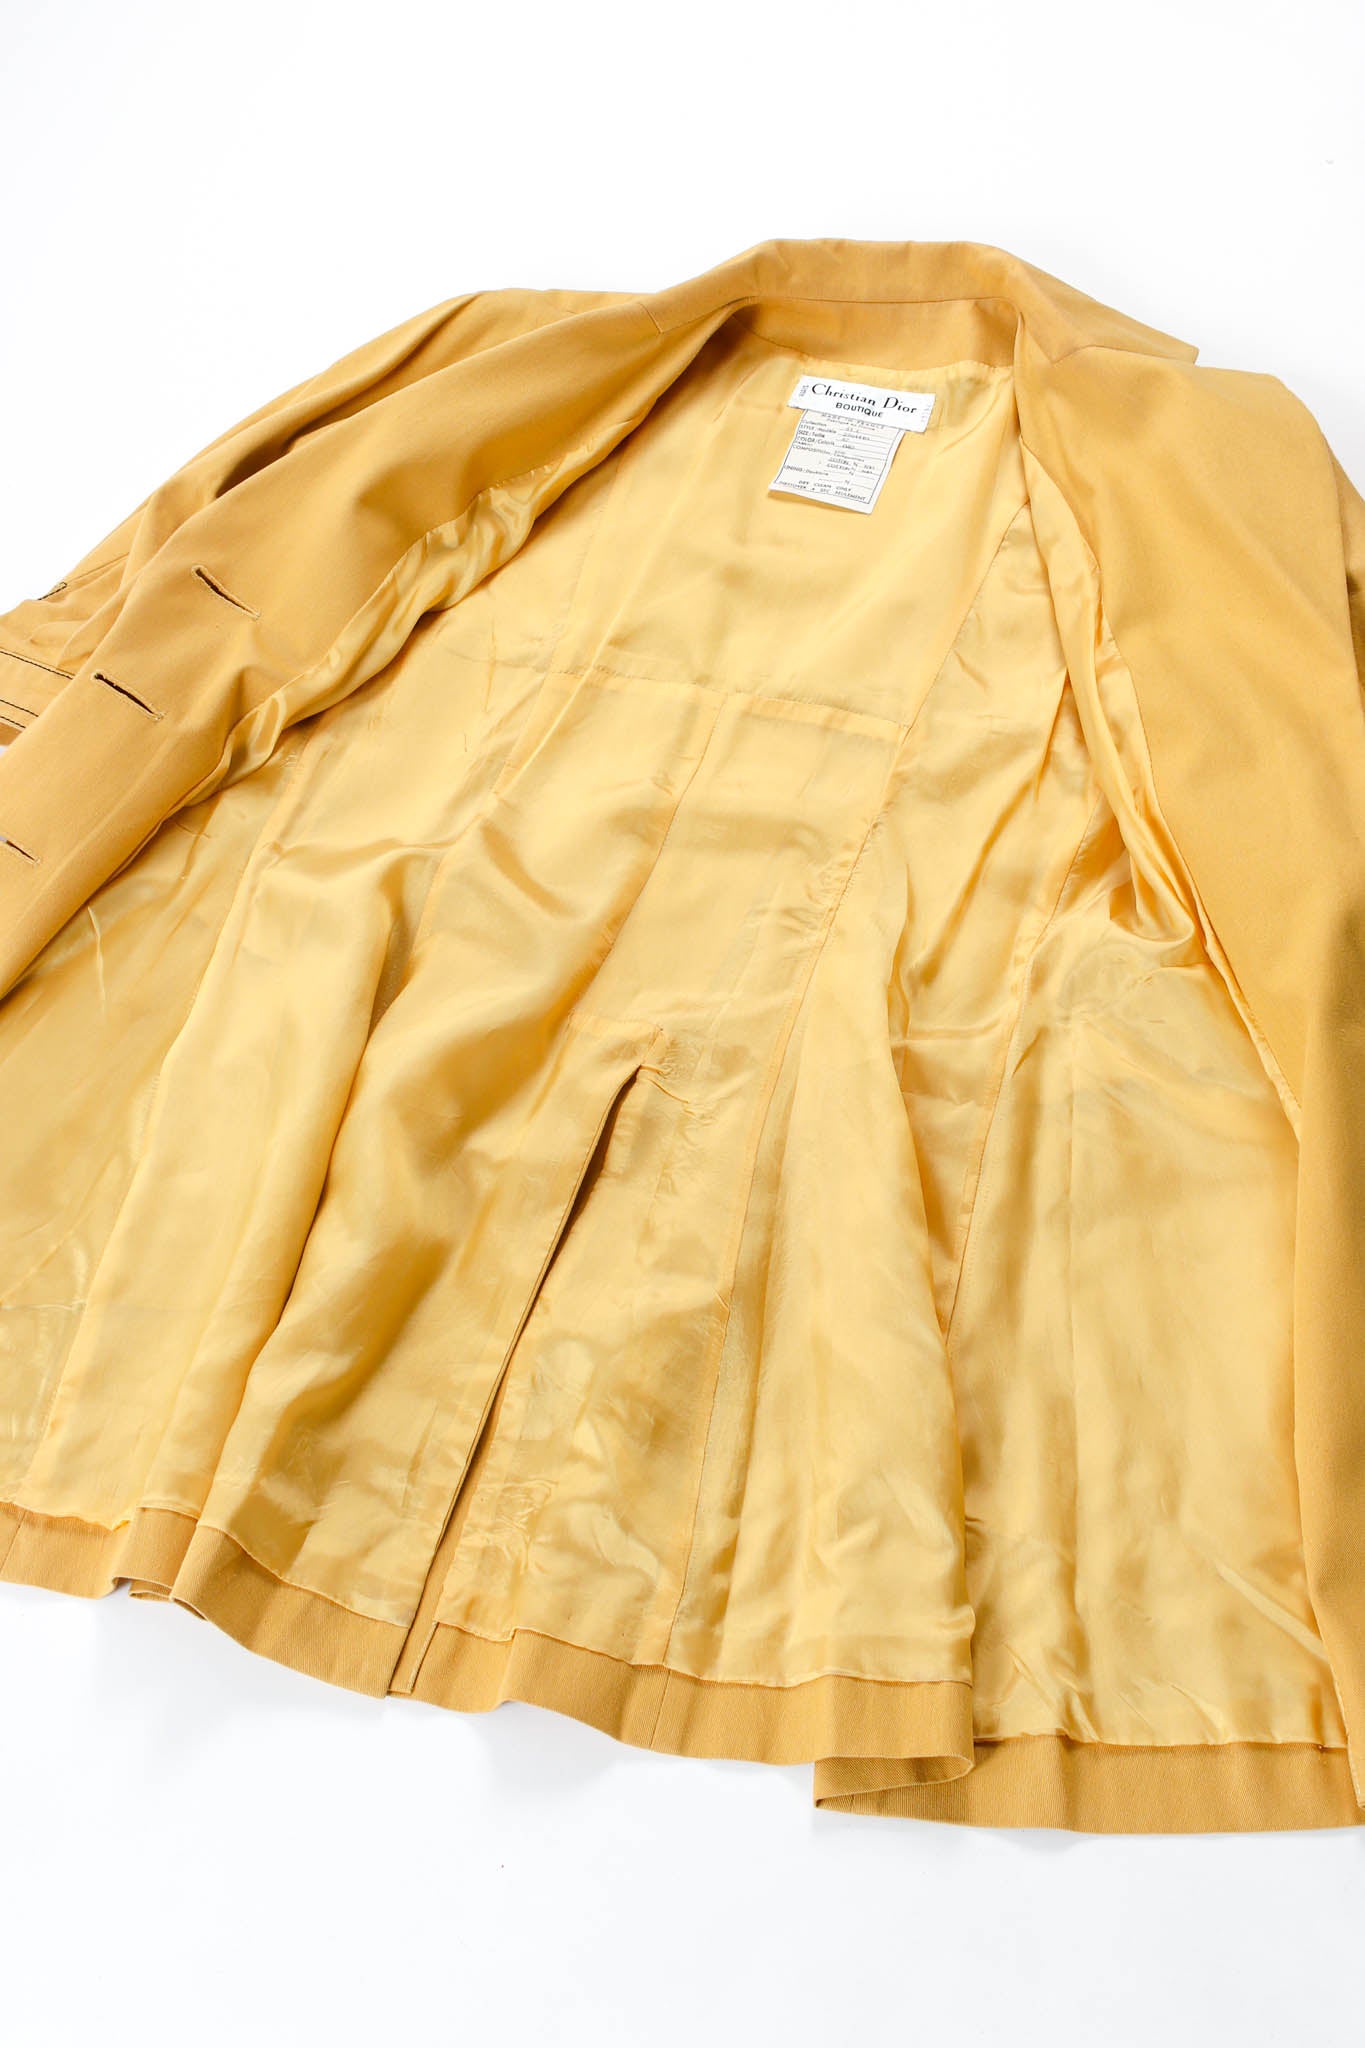 Vintage Christian Dior Golden Blazer & Skirt Suit Set liner spread @ Recess Los Angeles